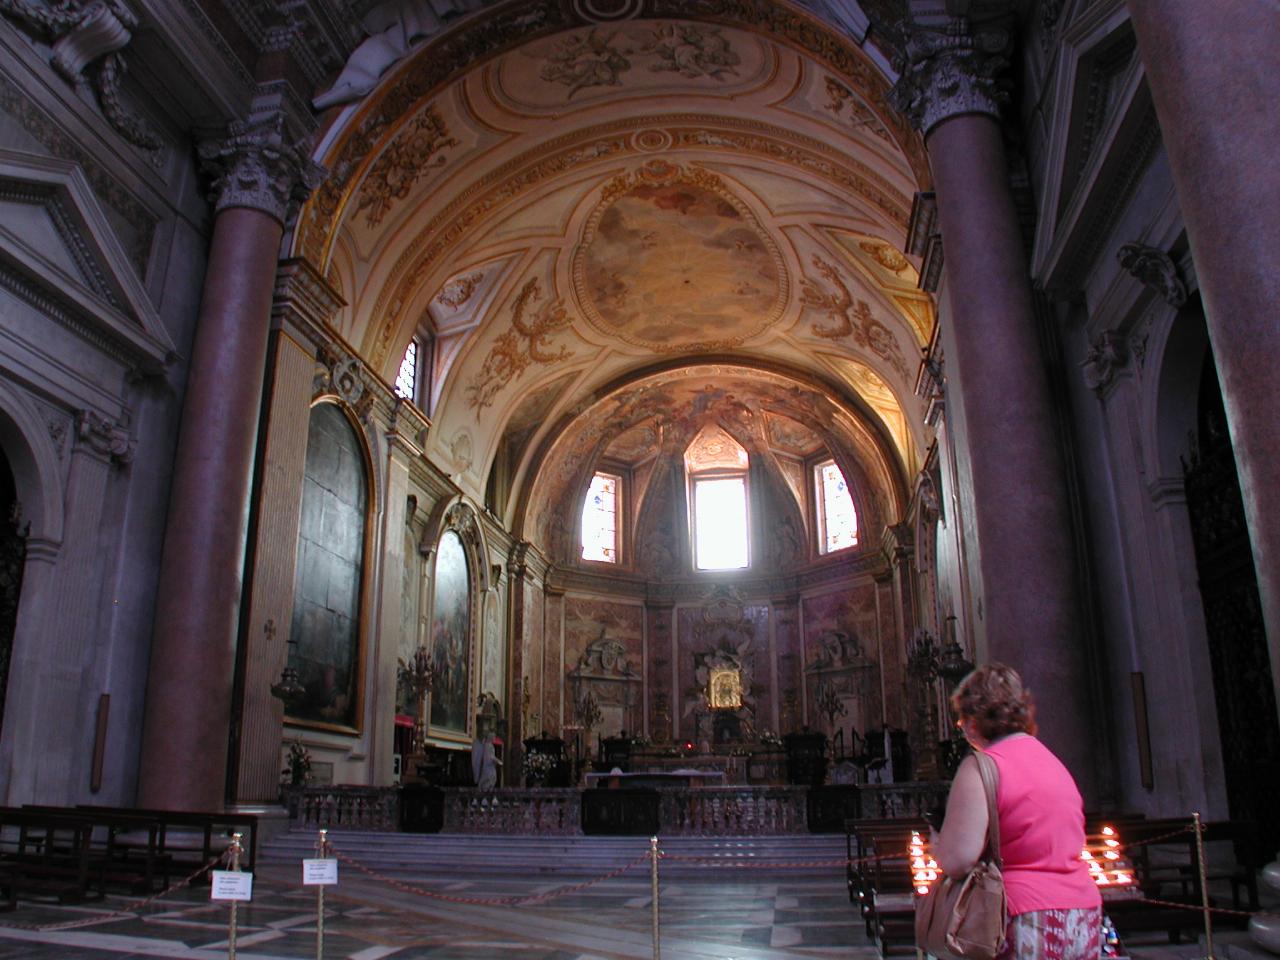 Main altar in S. Maria Degli Angeli